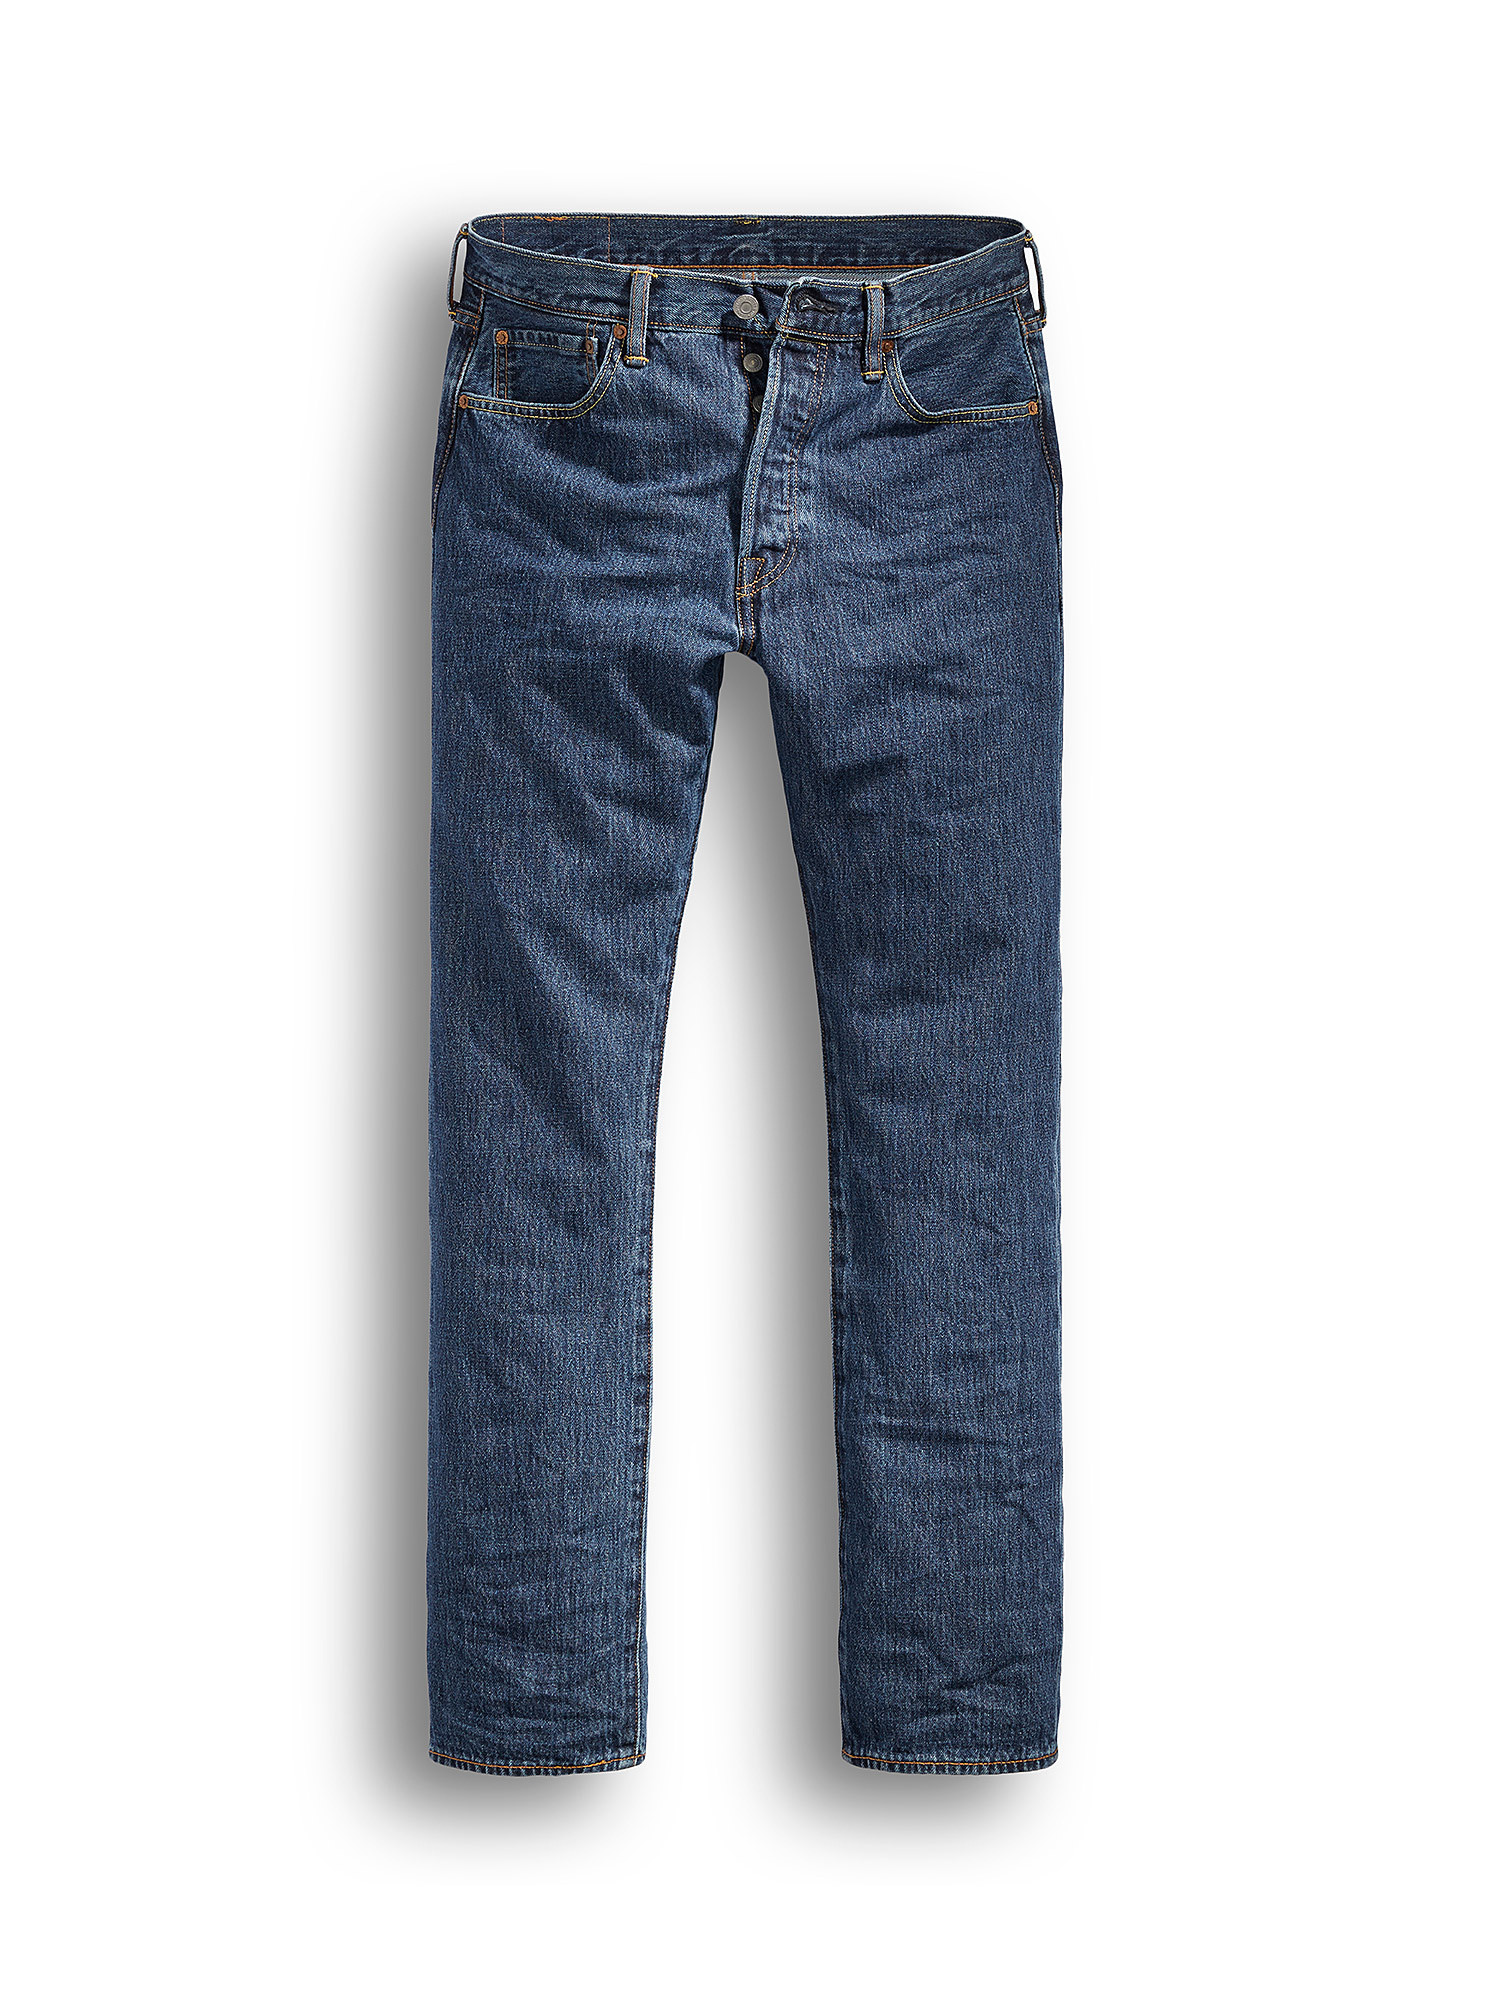 Jeans 501® Levi's® Original, Blu, large